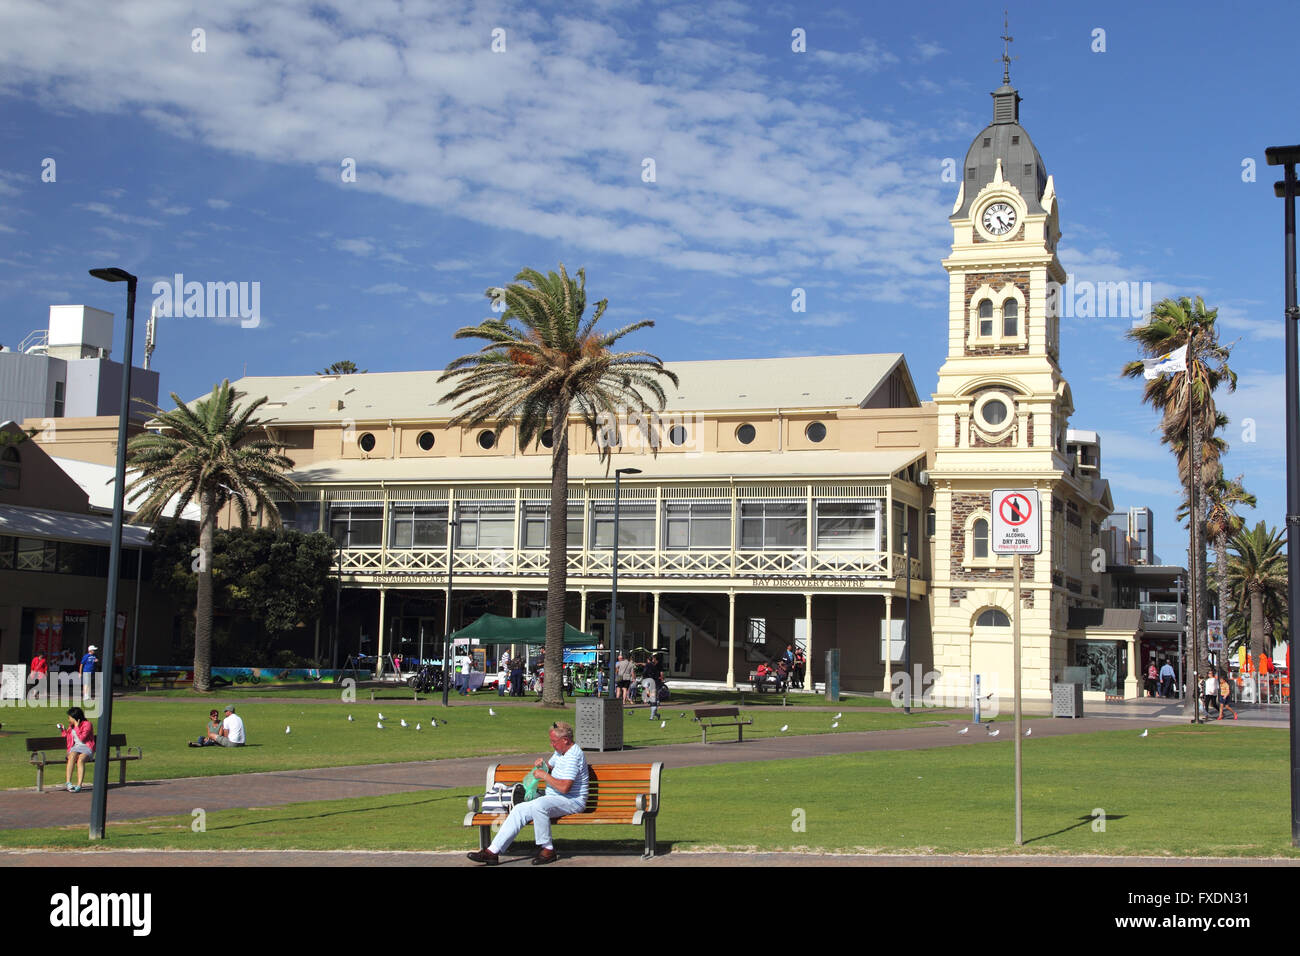 Glenelg Town Hall in Glenelg, Adelaide, South Australia, Australia. Stock Photo